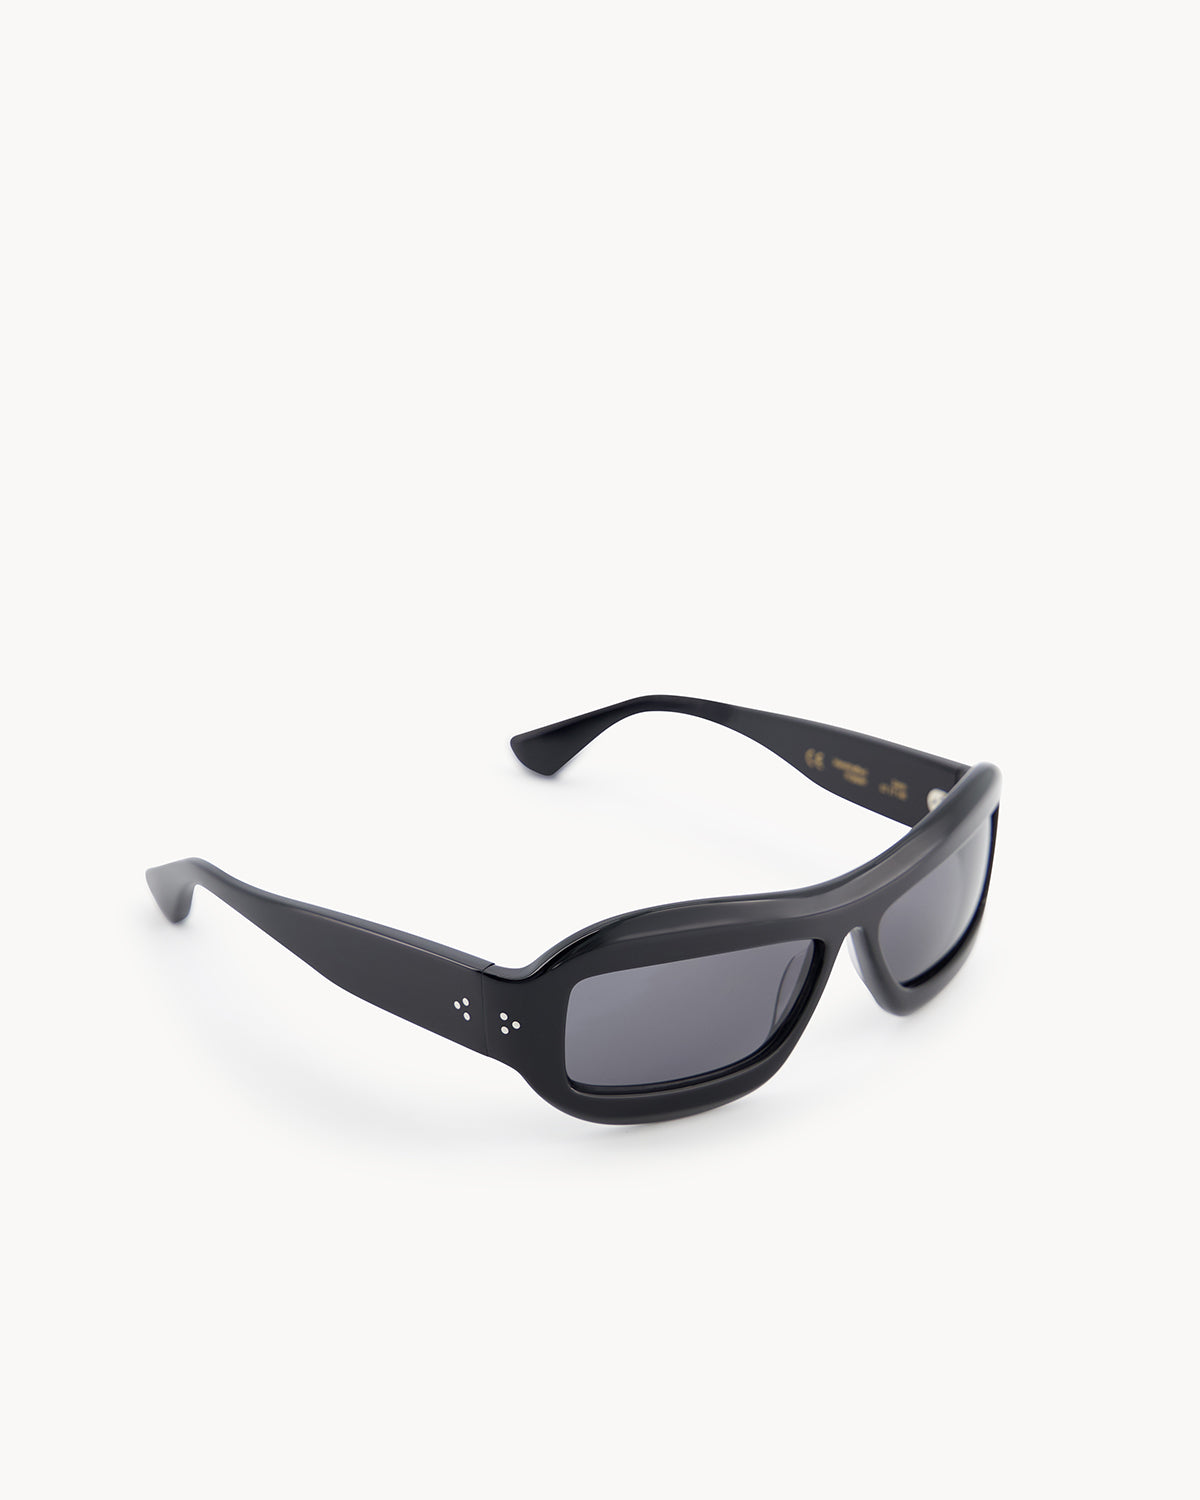 Port Tanger Zarin Sunglasses in Black Acetate and Black Lenses 2